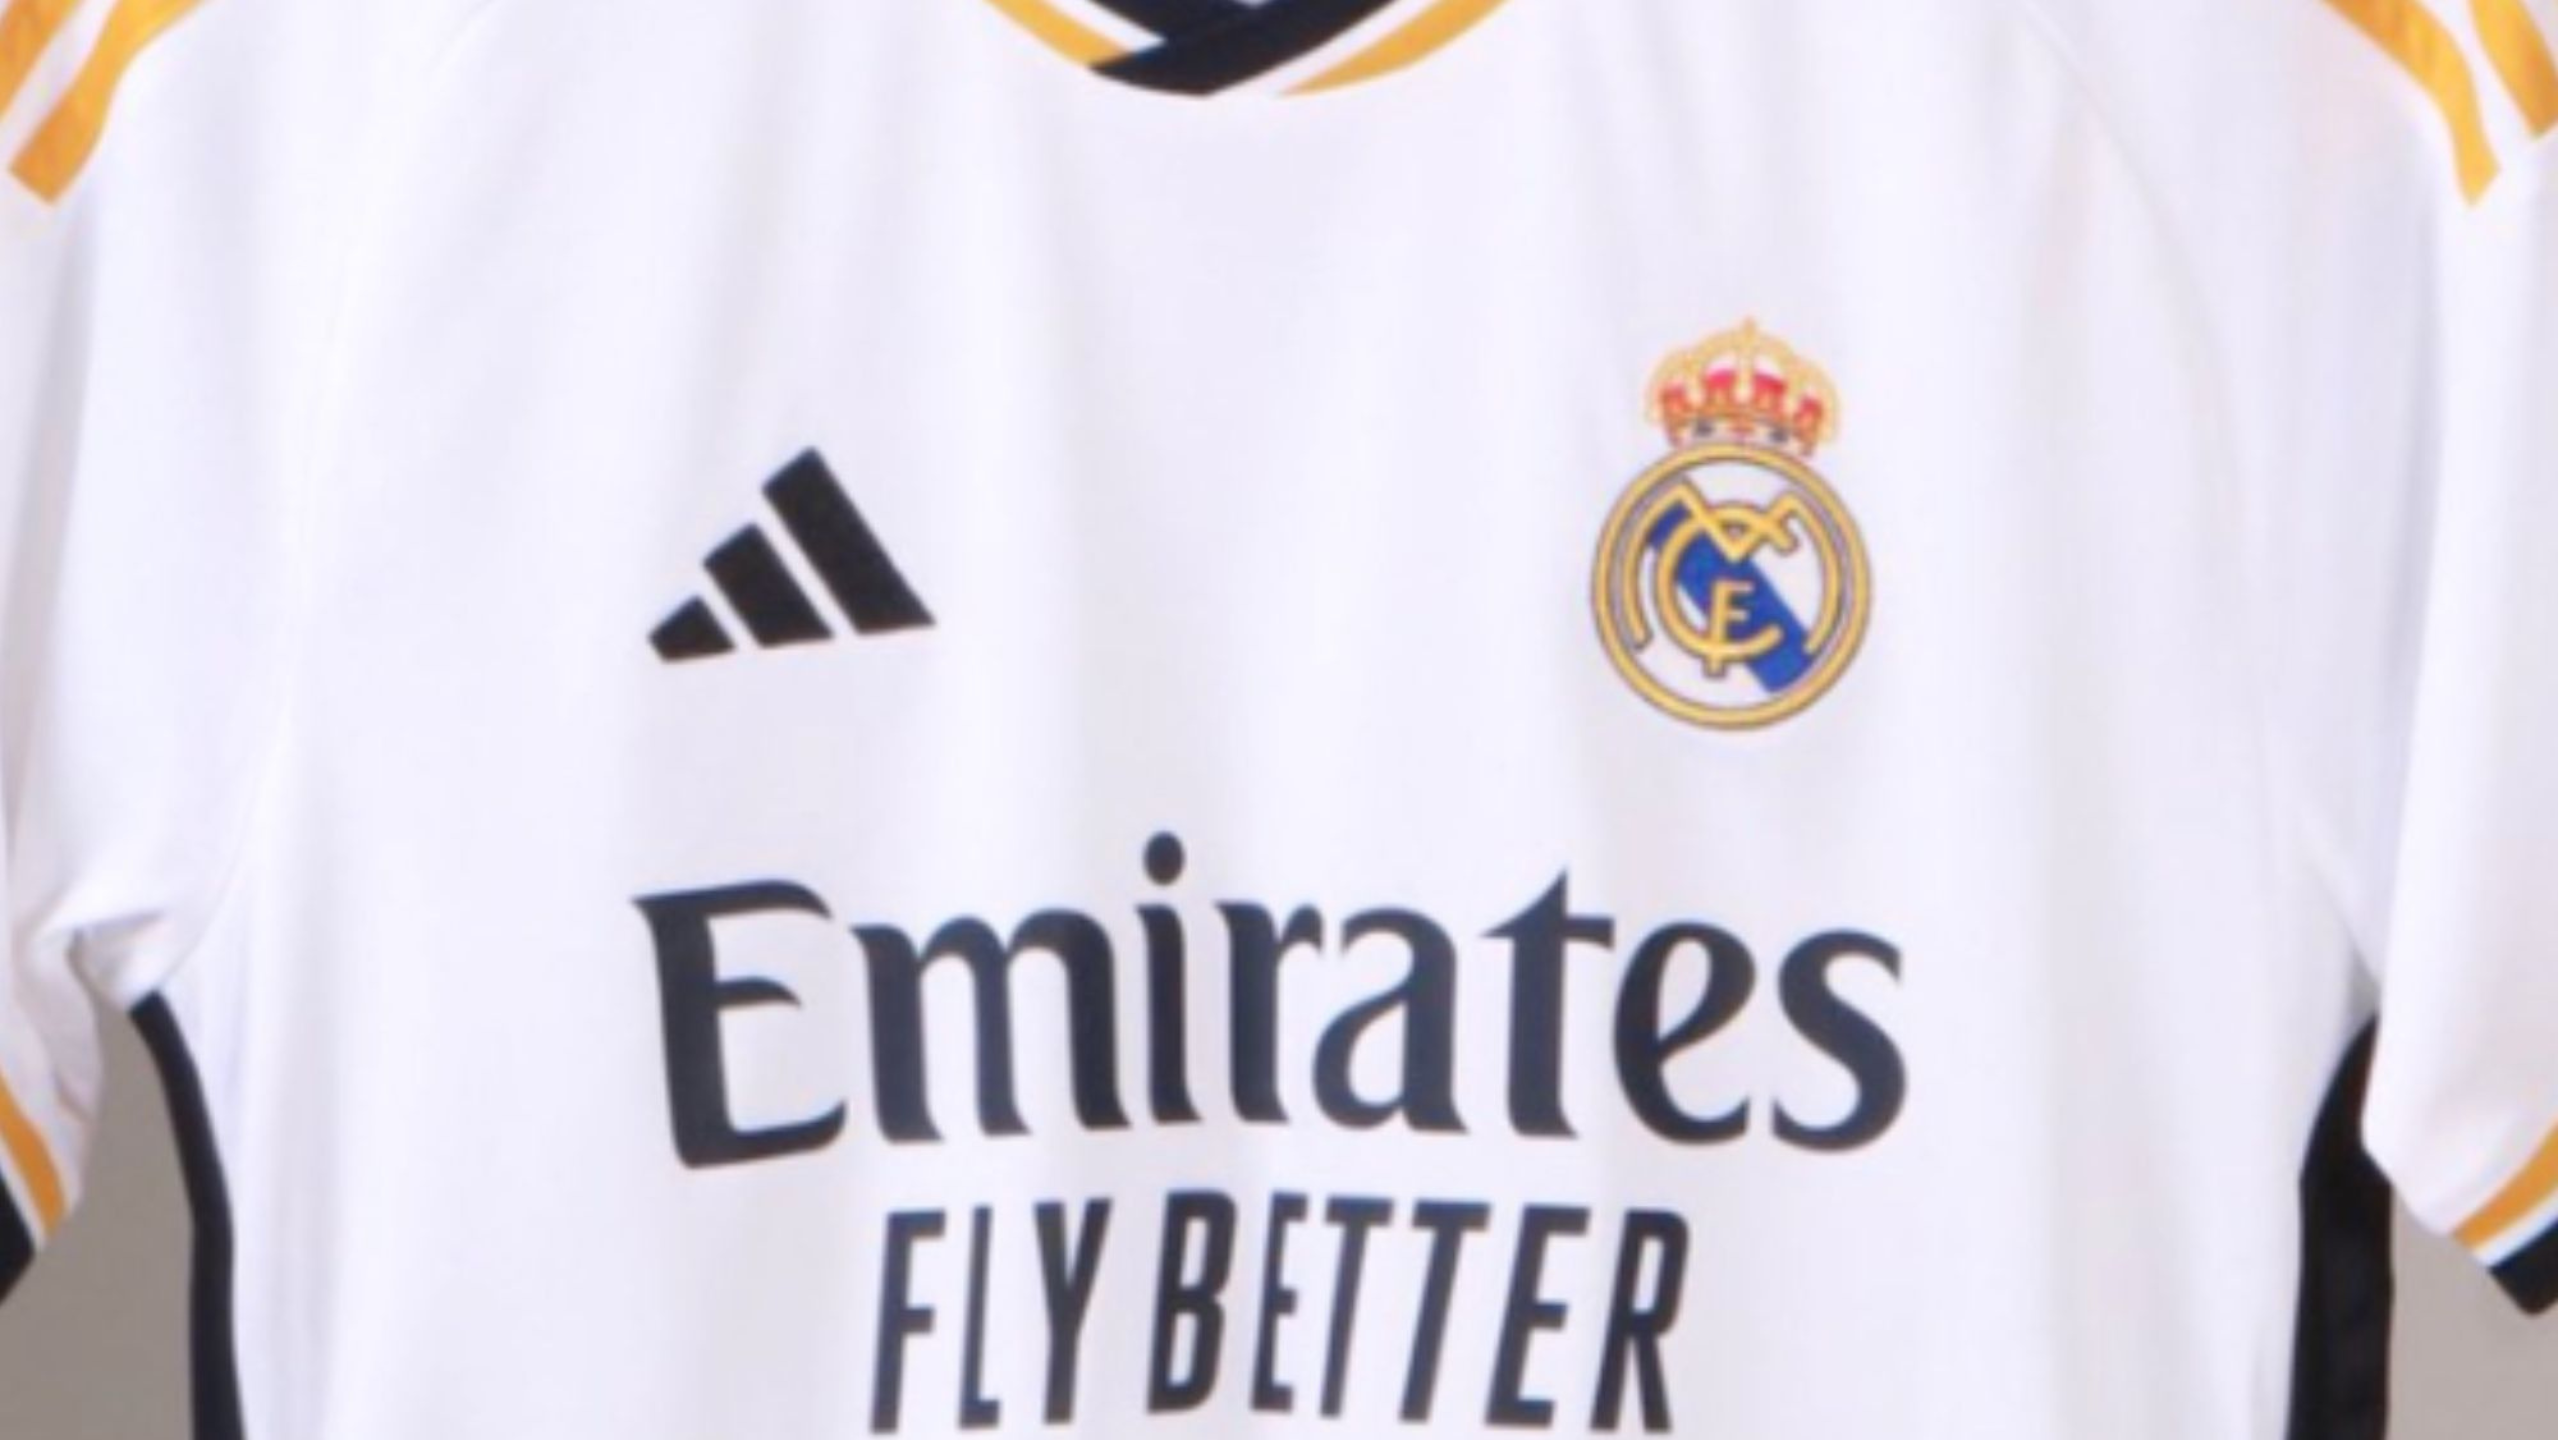 Oficial: el Real Madrid presenta su nueva camiseta para la 2023-2024